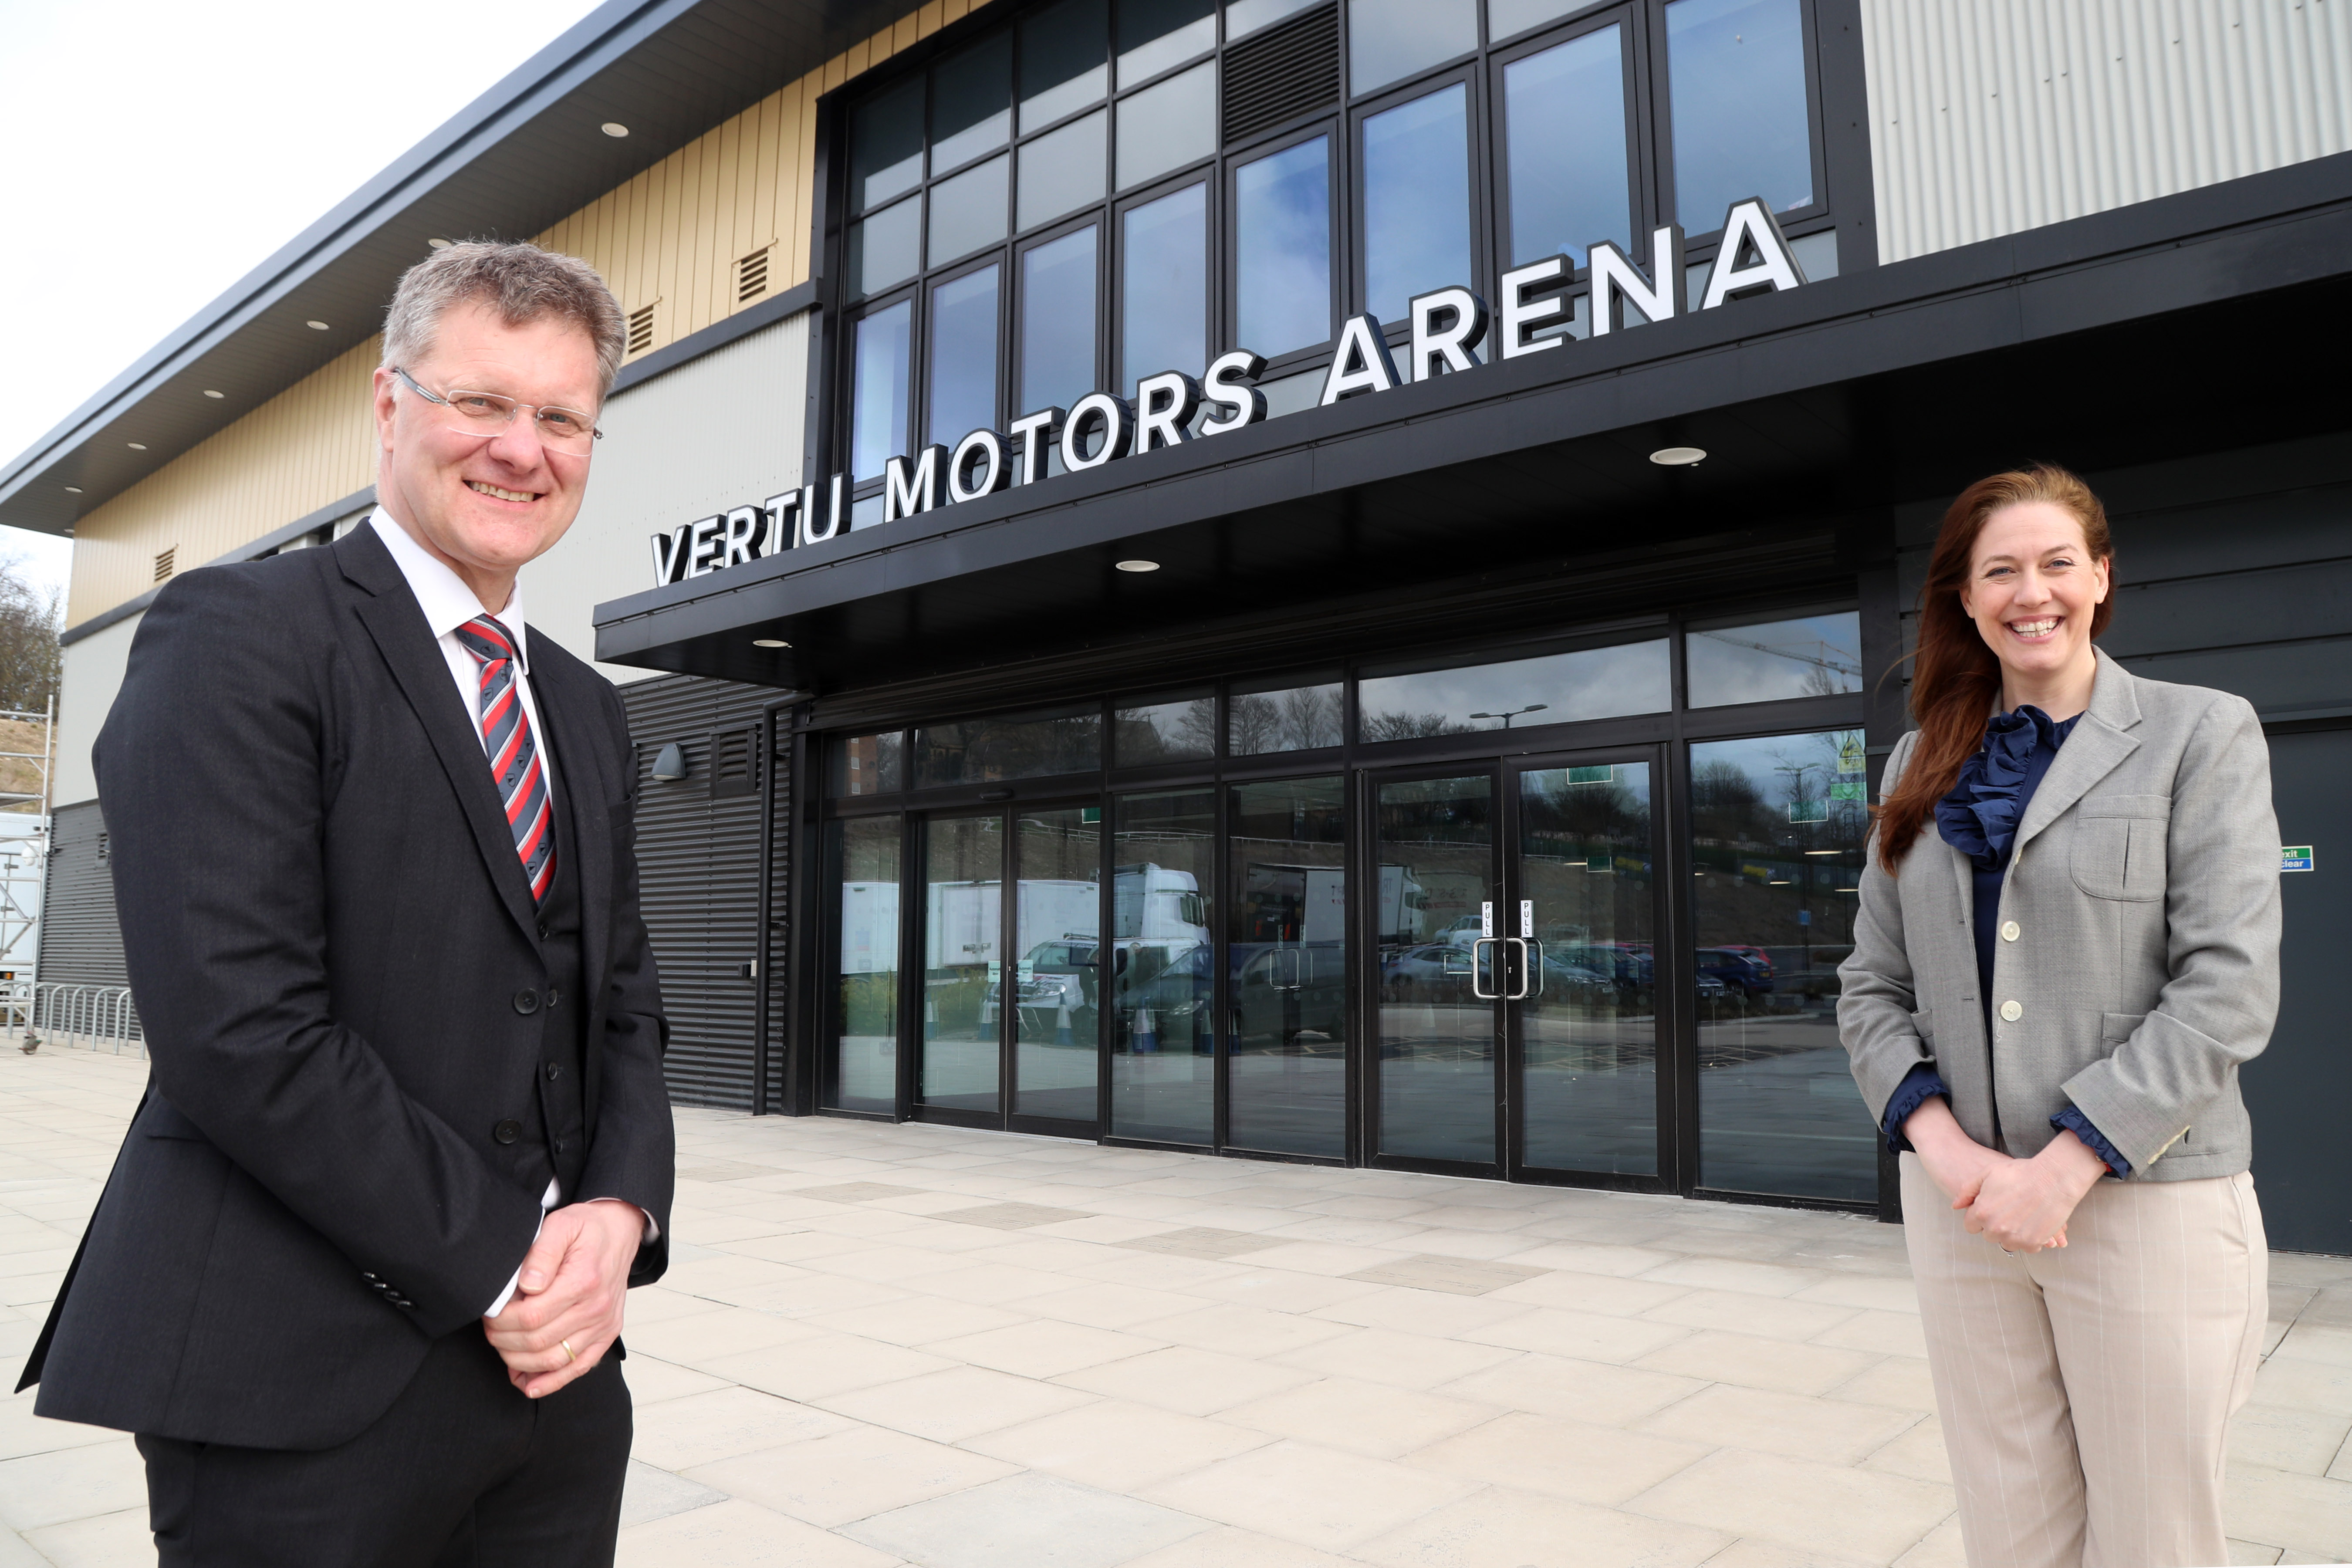 Vertu Motors Arena Unveiled In Newcastle